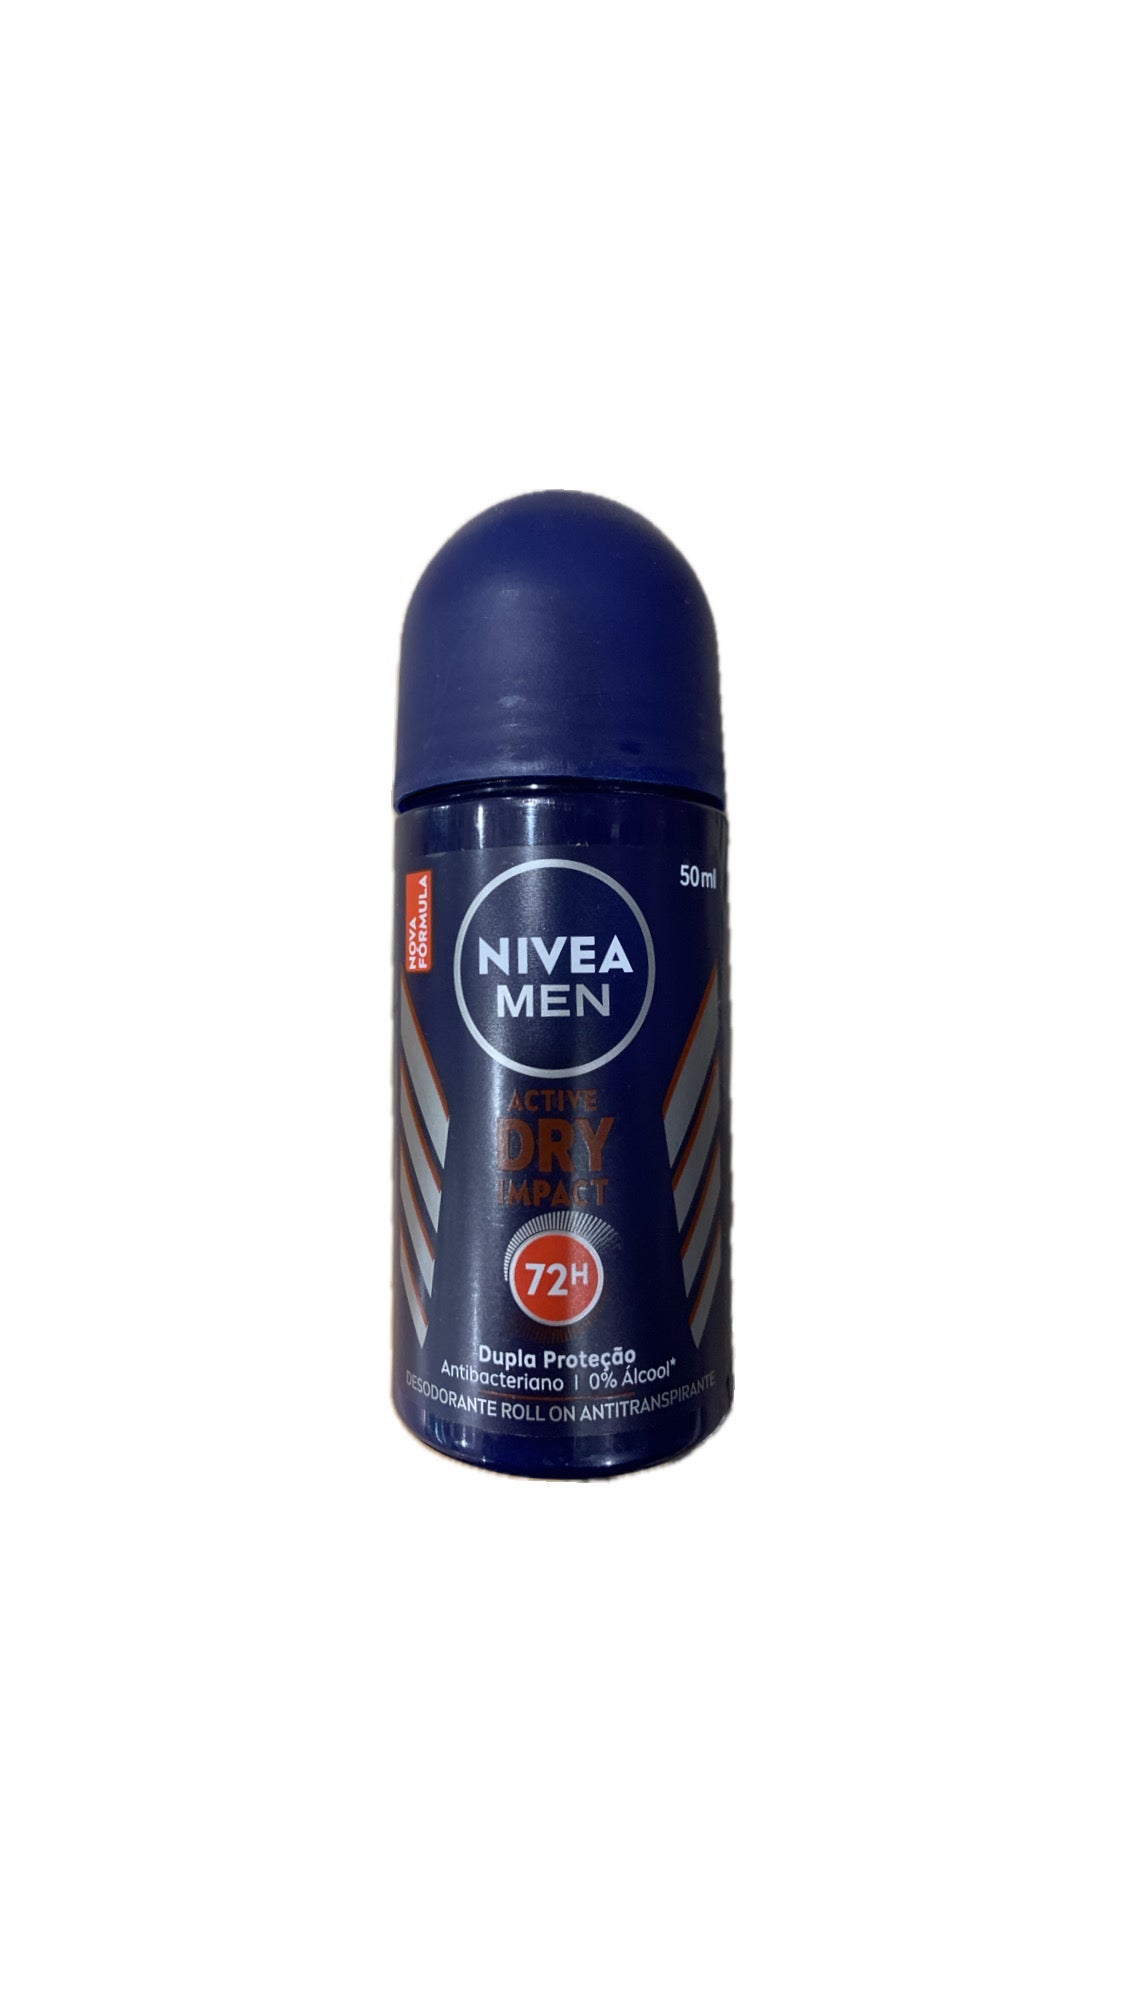 Desodorante Nivea Men Roll-on Active Dry 72h